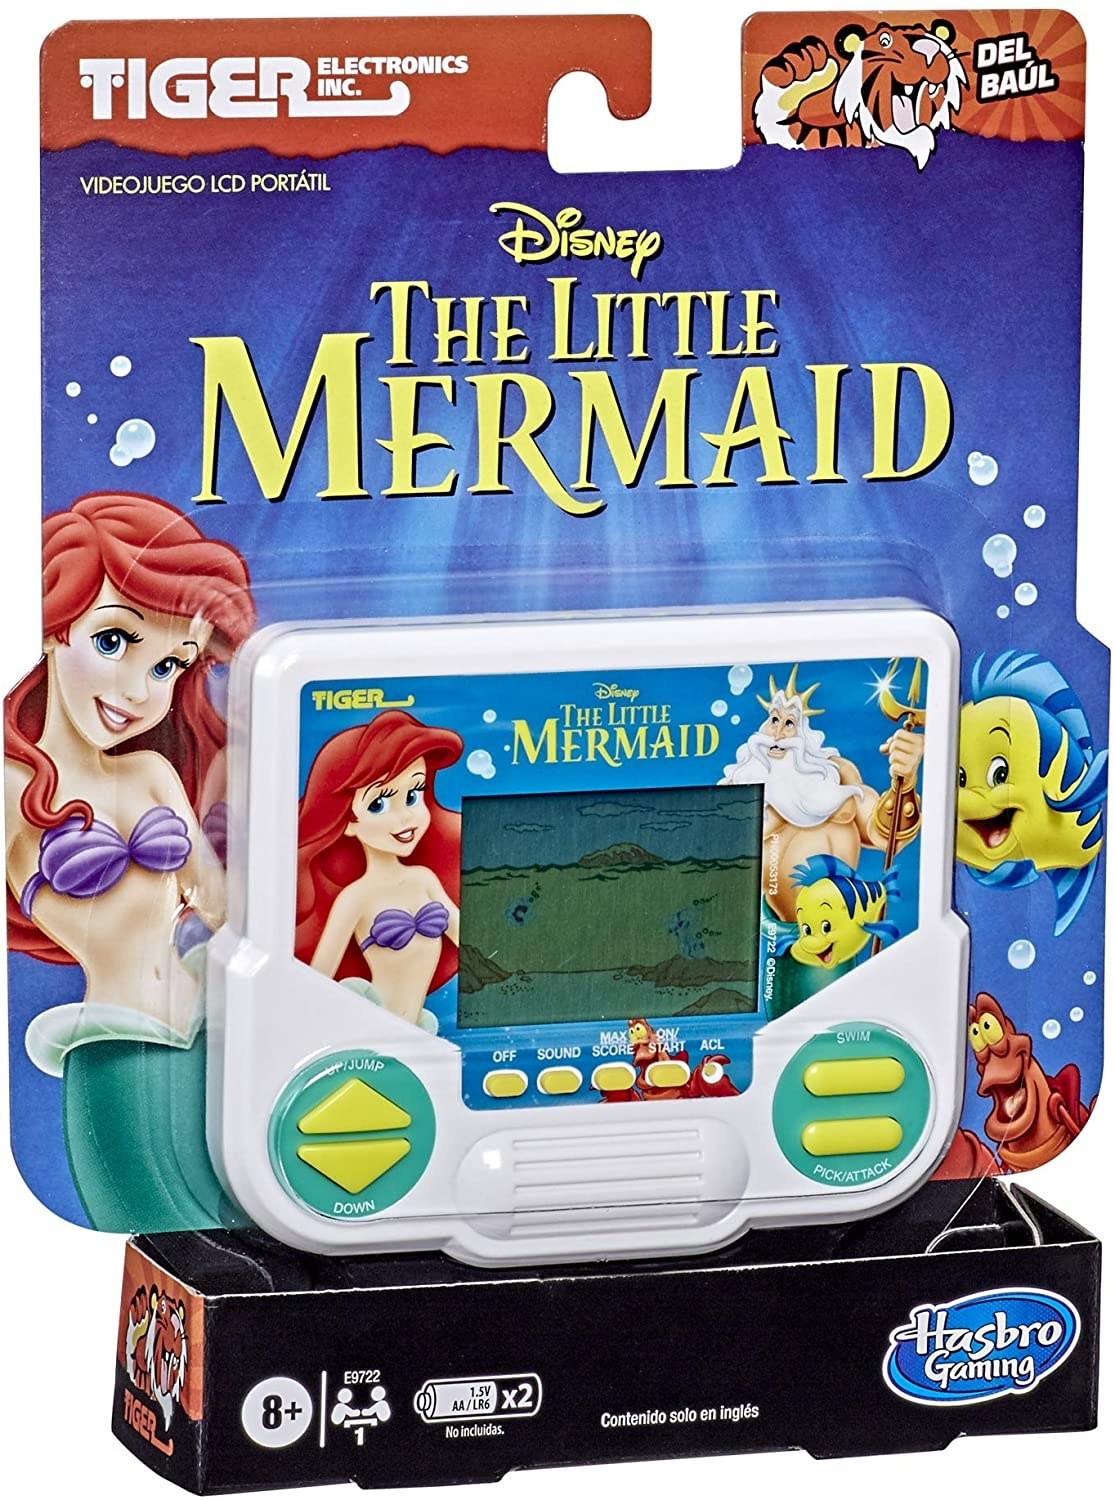 Little mermaid handheld game